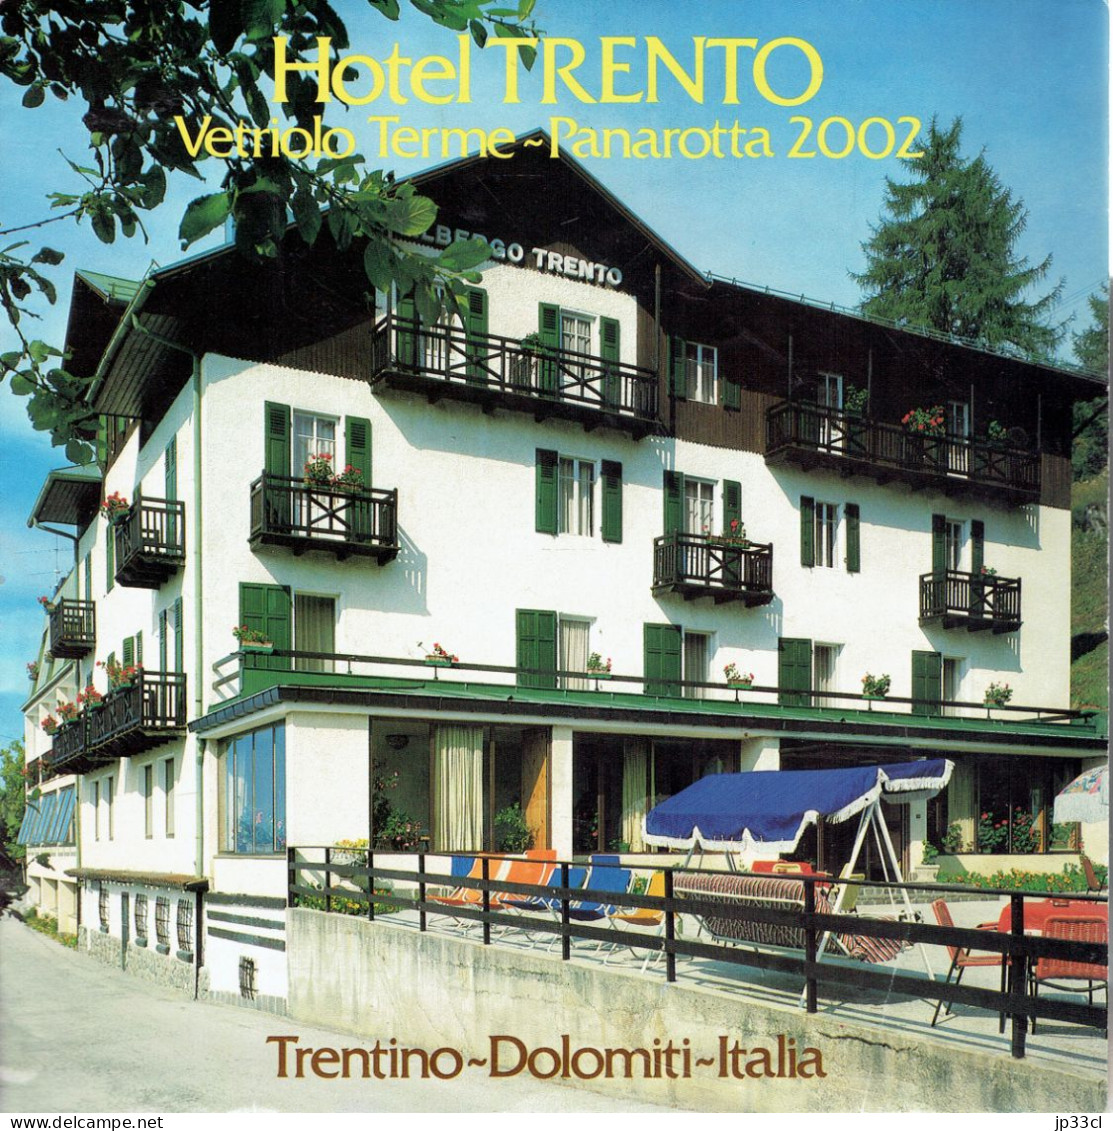 Dépliant Sur L'Hôtel Trento Vetriolo Terme - Panarota 2002, Dolomiti (en Français, Italien, Allemand Et Anglais) - Tourism Brochures